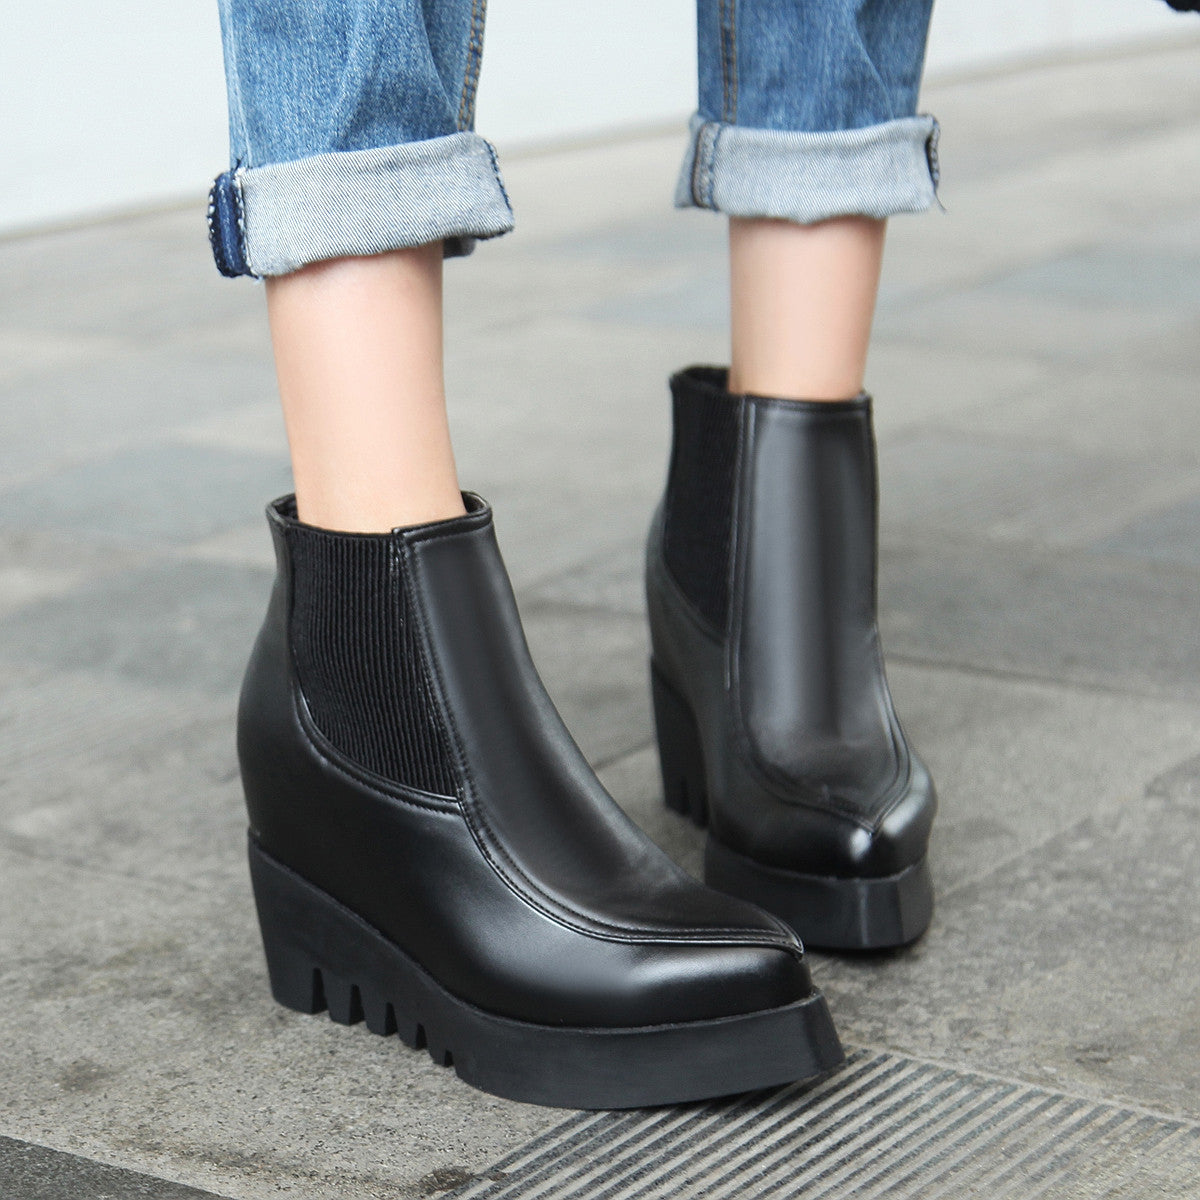 Black Wedges Boots Women Shoes Fall|Winter 11191501 – Shoeu